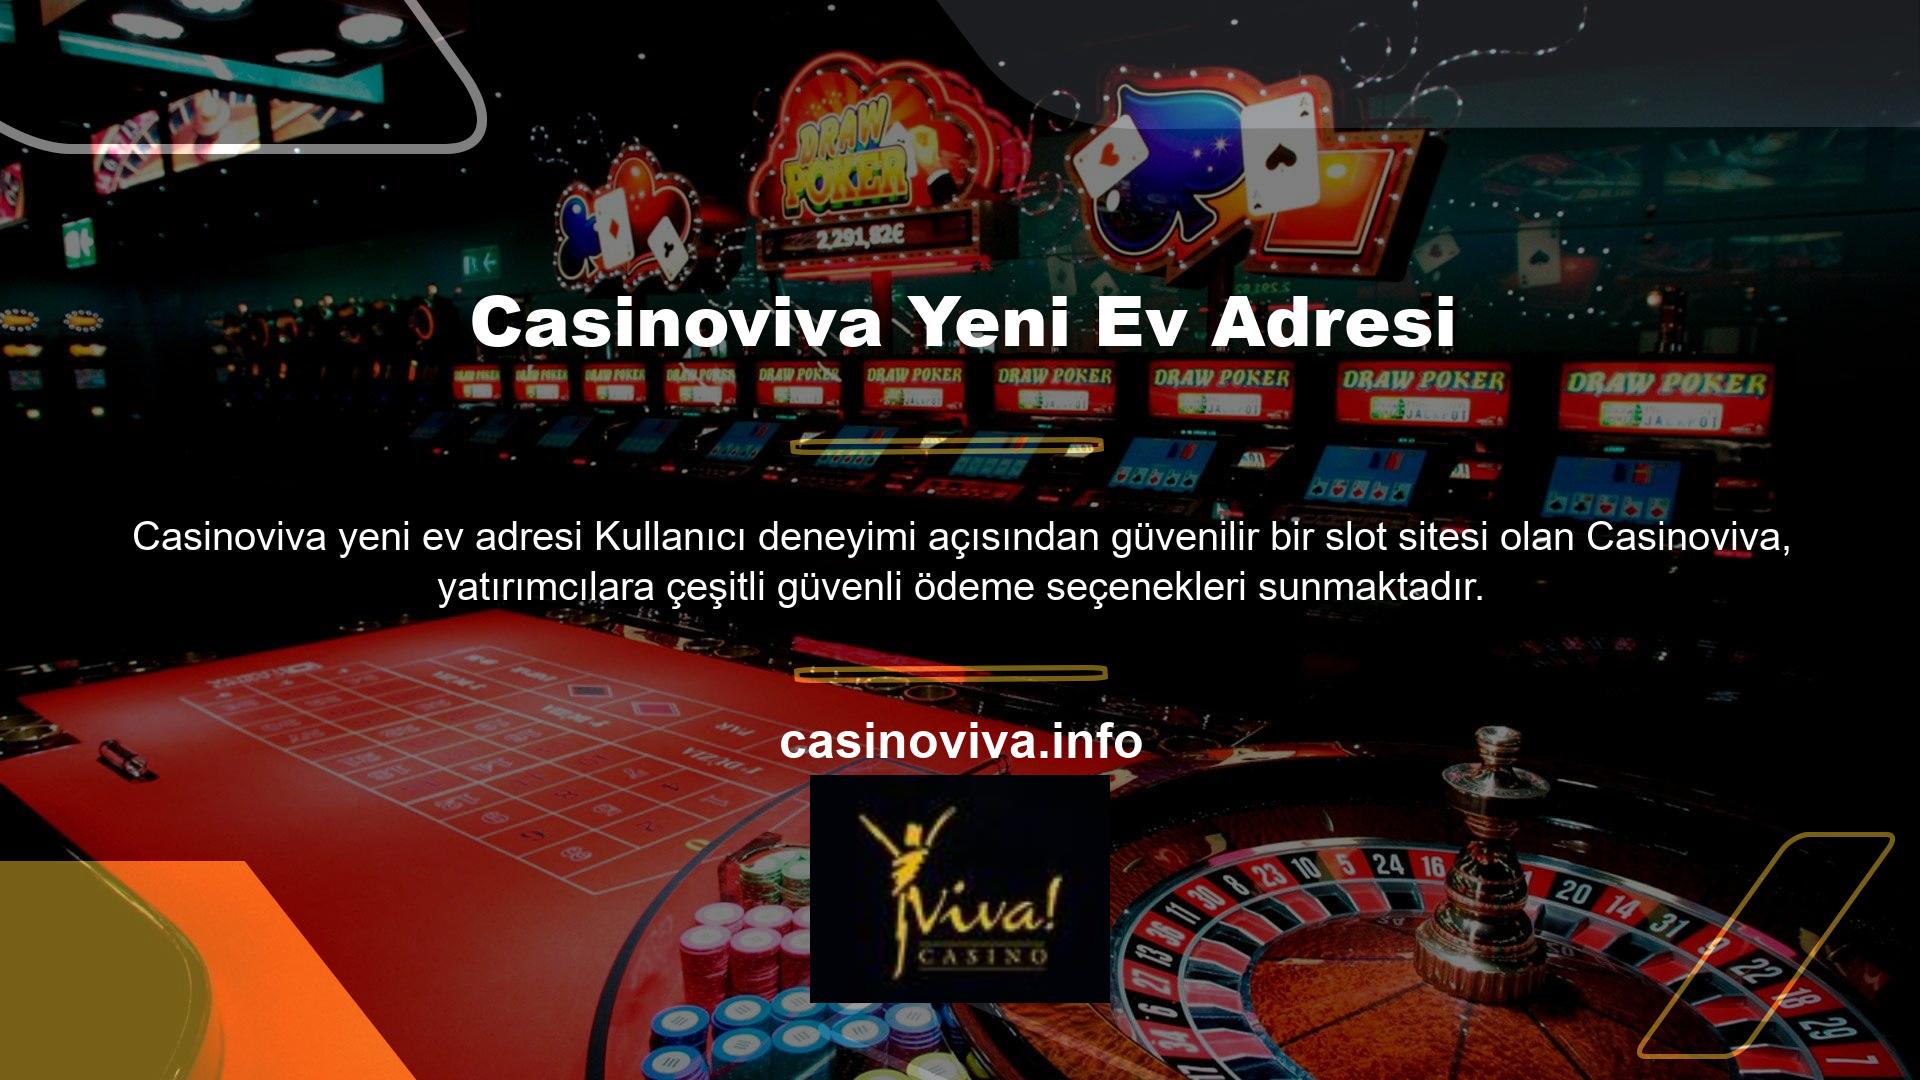 Casinoviva Yeni Ev Adresi